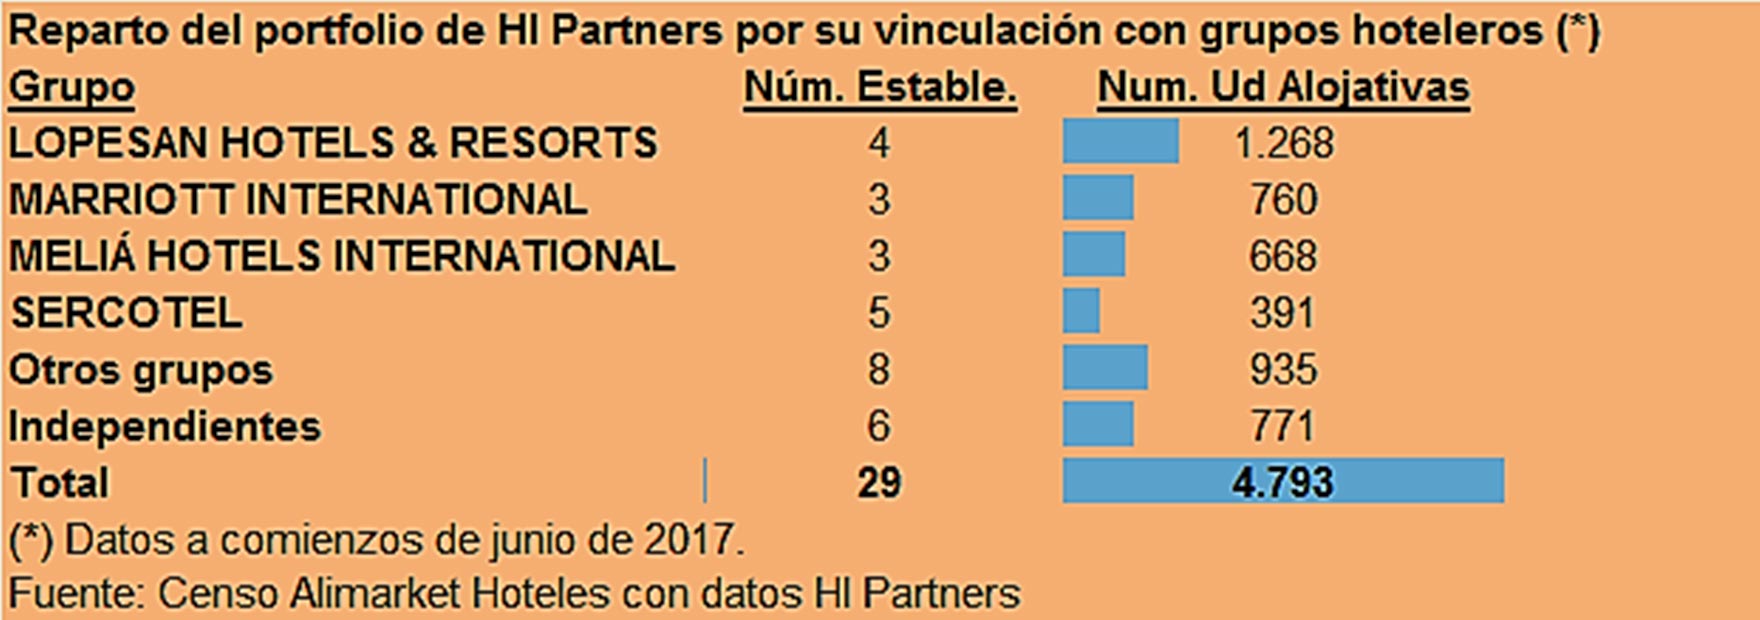 Reparto del portfolio de Hi Partners por su vinculación con grupos hoteleros